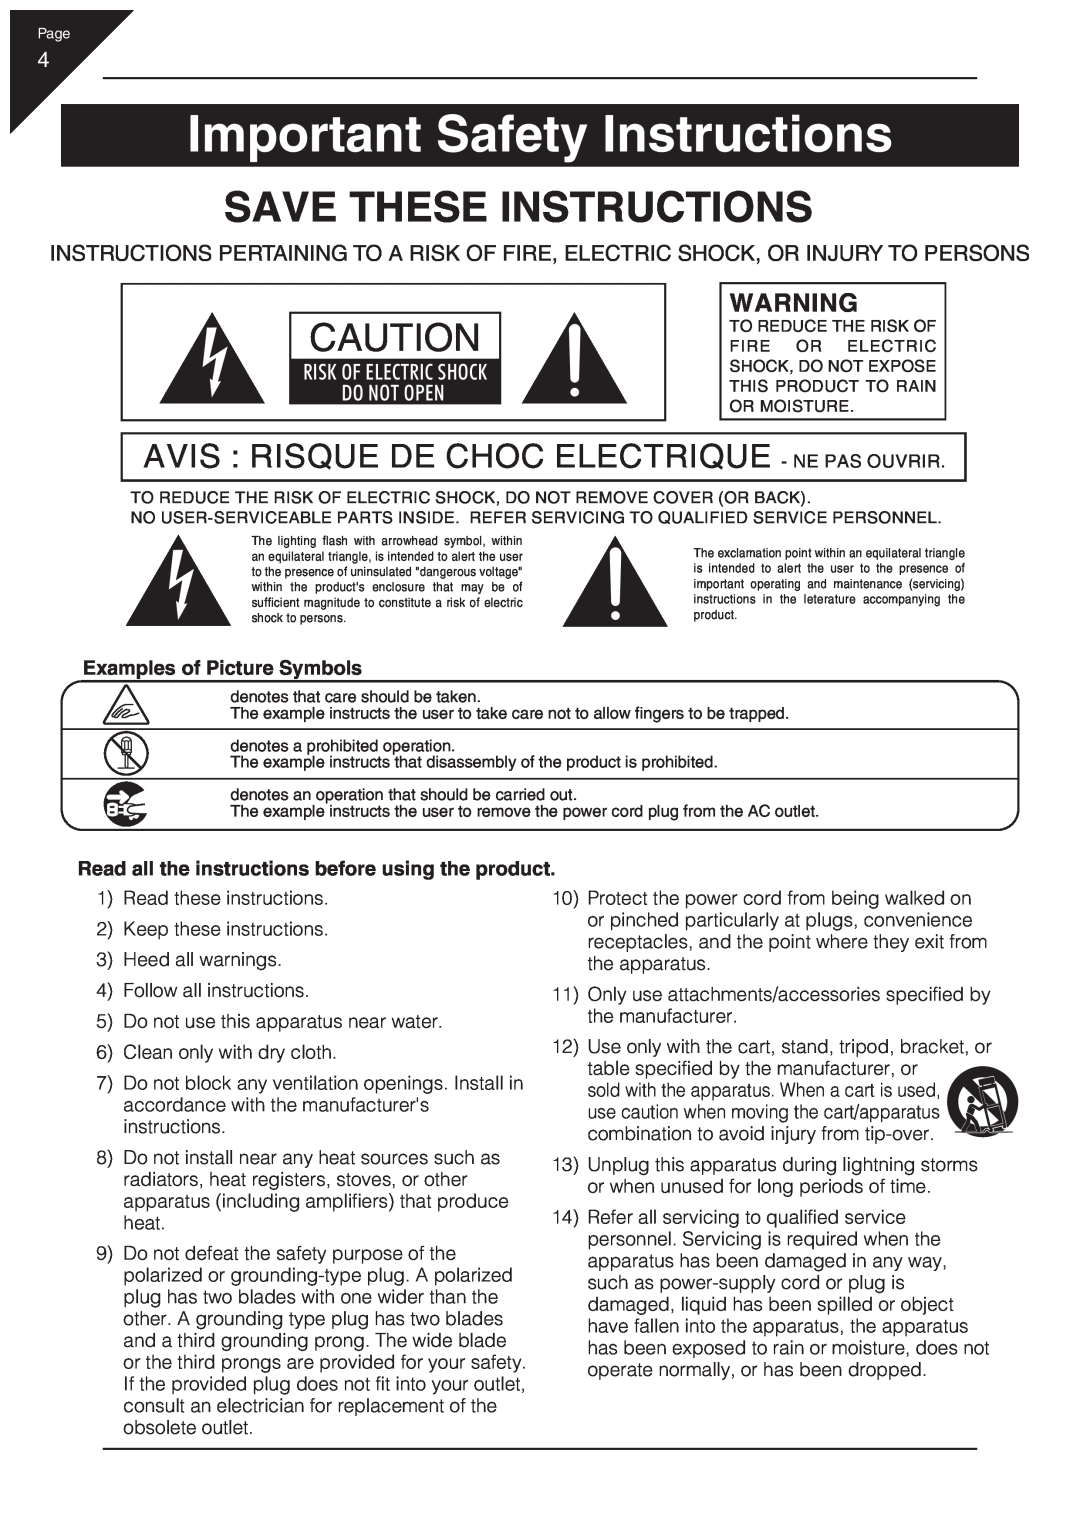 Kawai CN31 manual Important Safety Instructions, Save These Instructions, Avis Risque De Choc Electrique - Ne Pas Ouvrir 